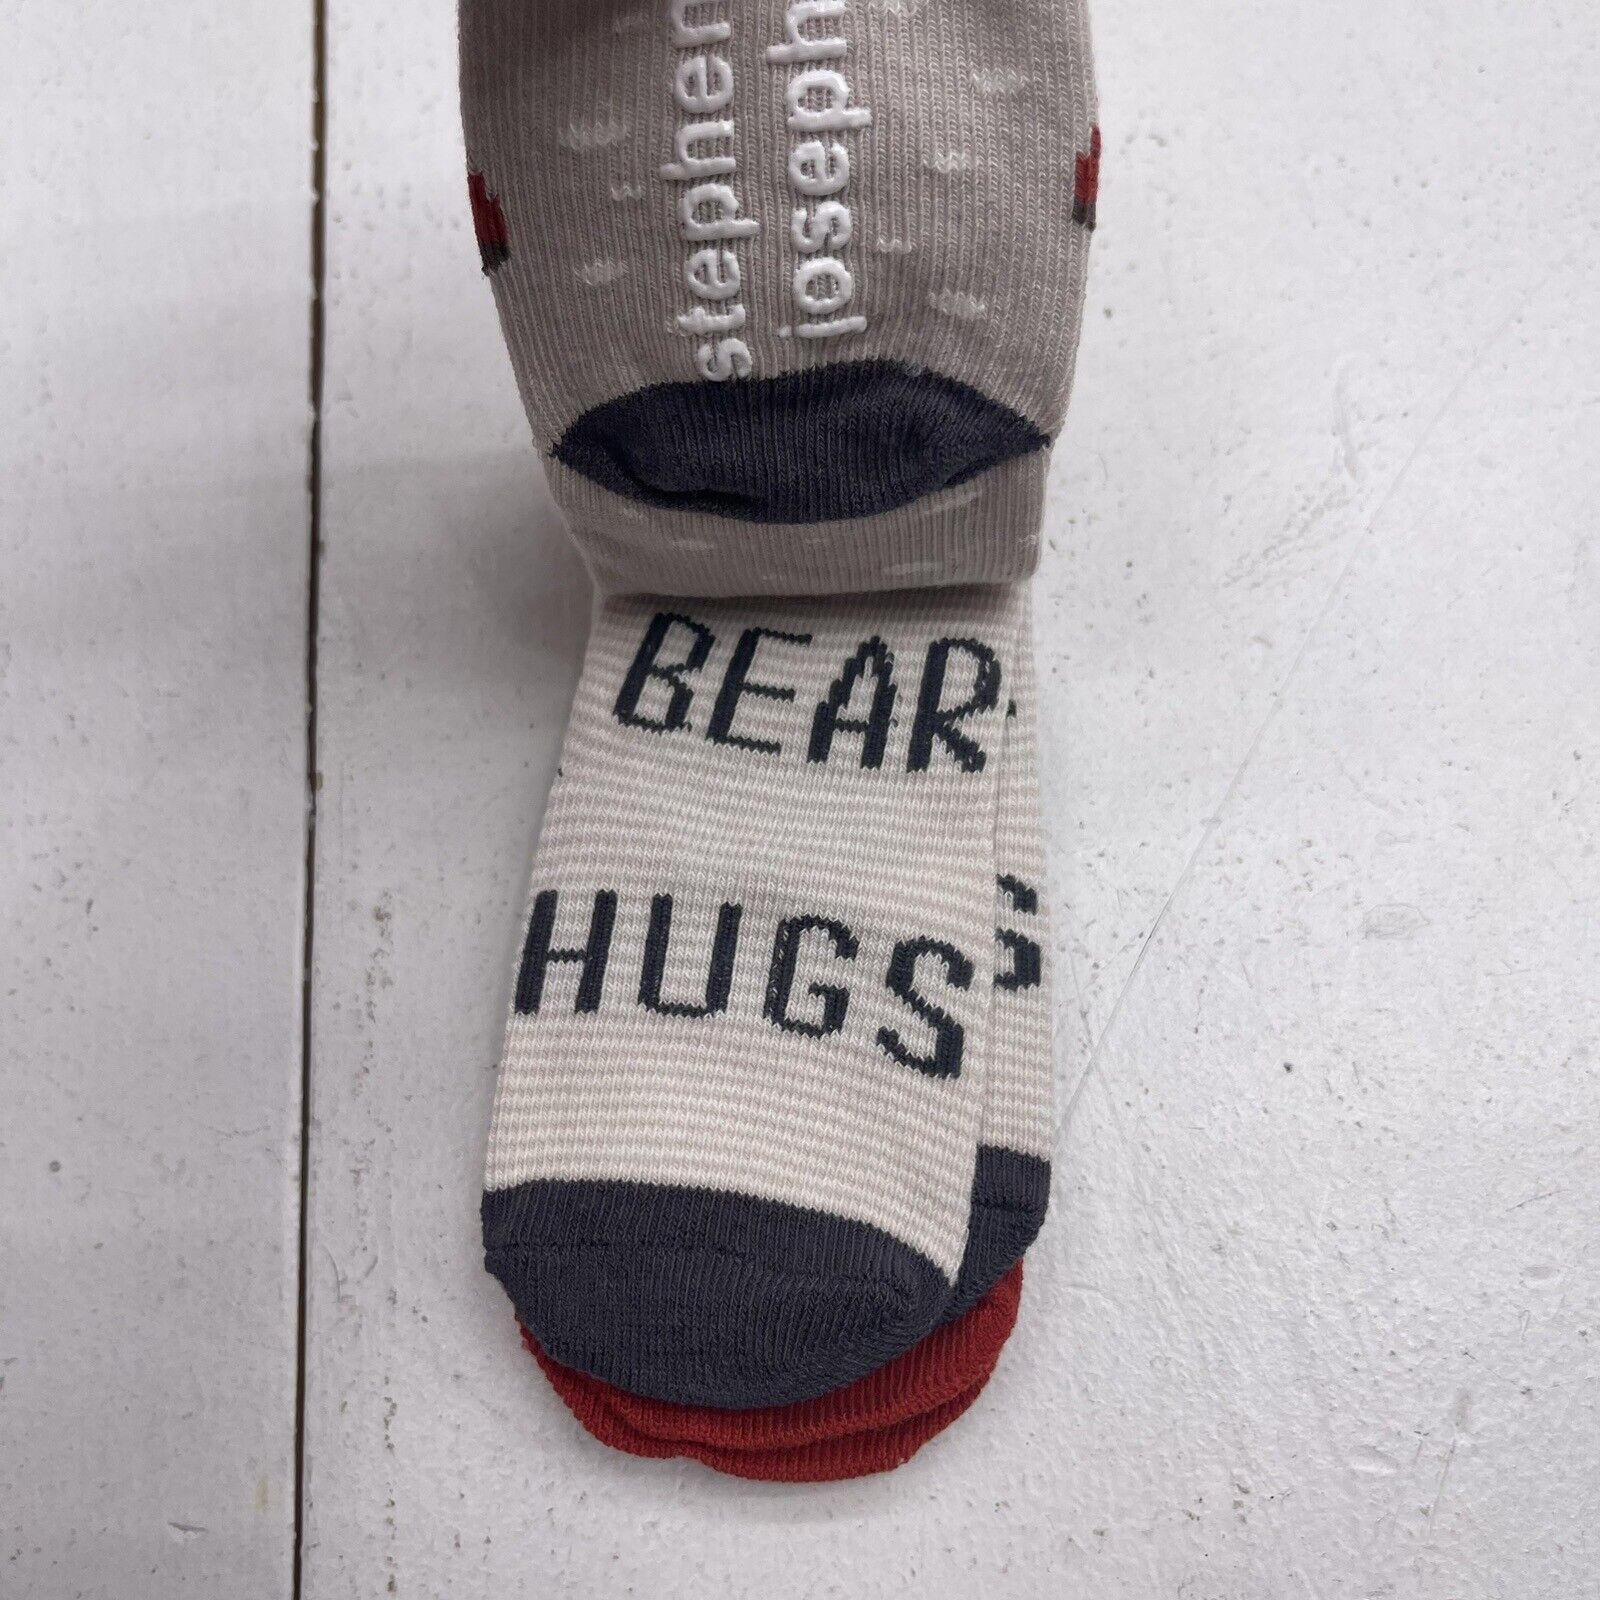 Stephen Joseph Baby Socks 3 Pack Bear